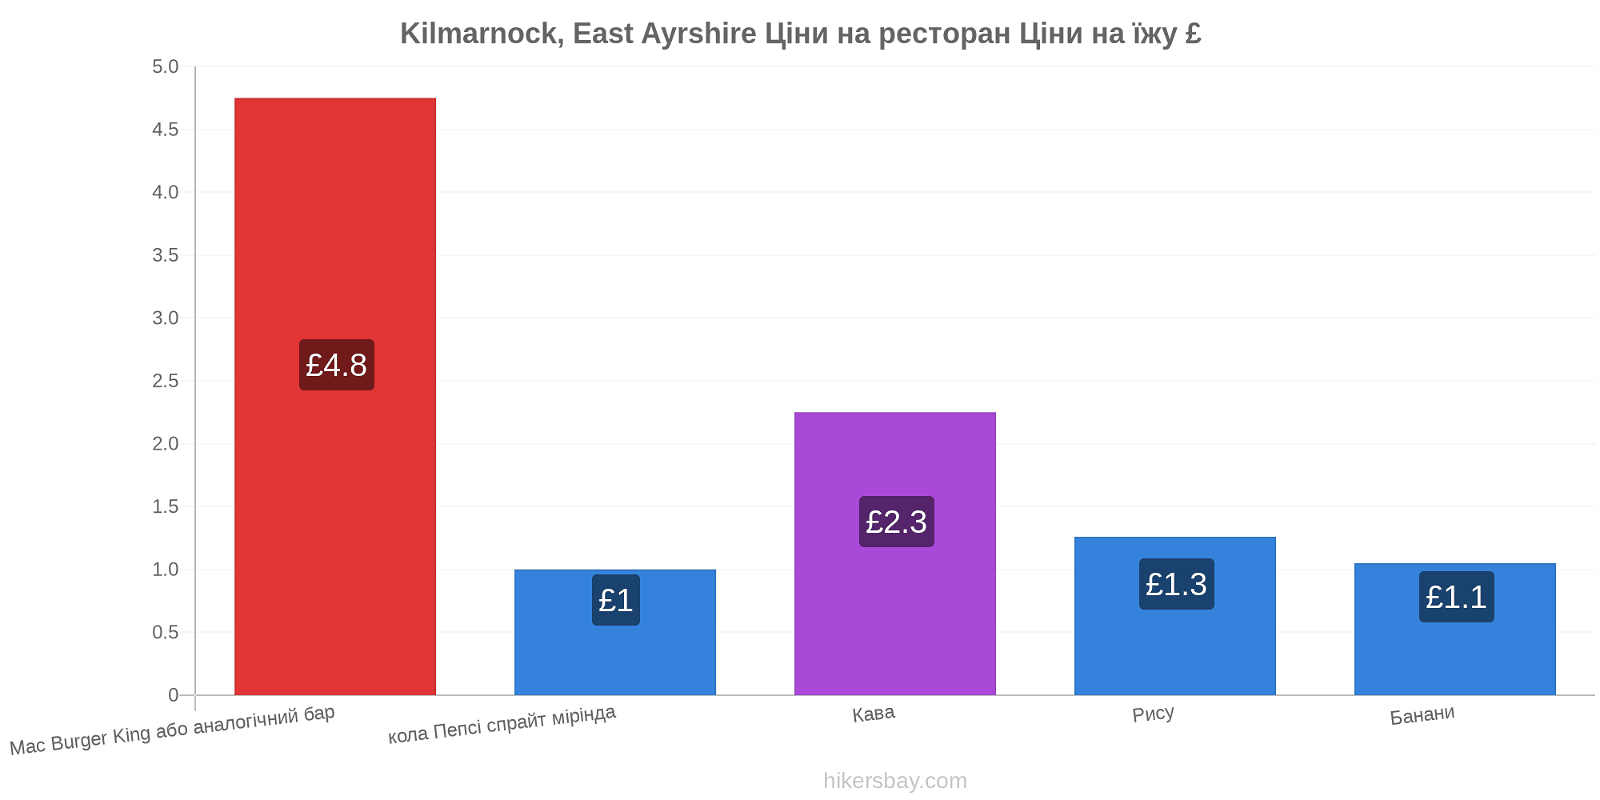 Kilmarnock, East Ayrshire зміни цін hikersbay.com